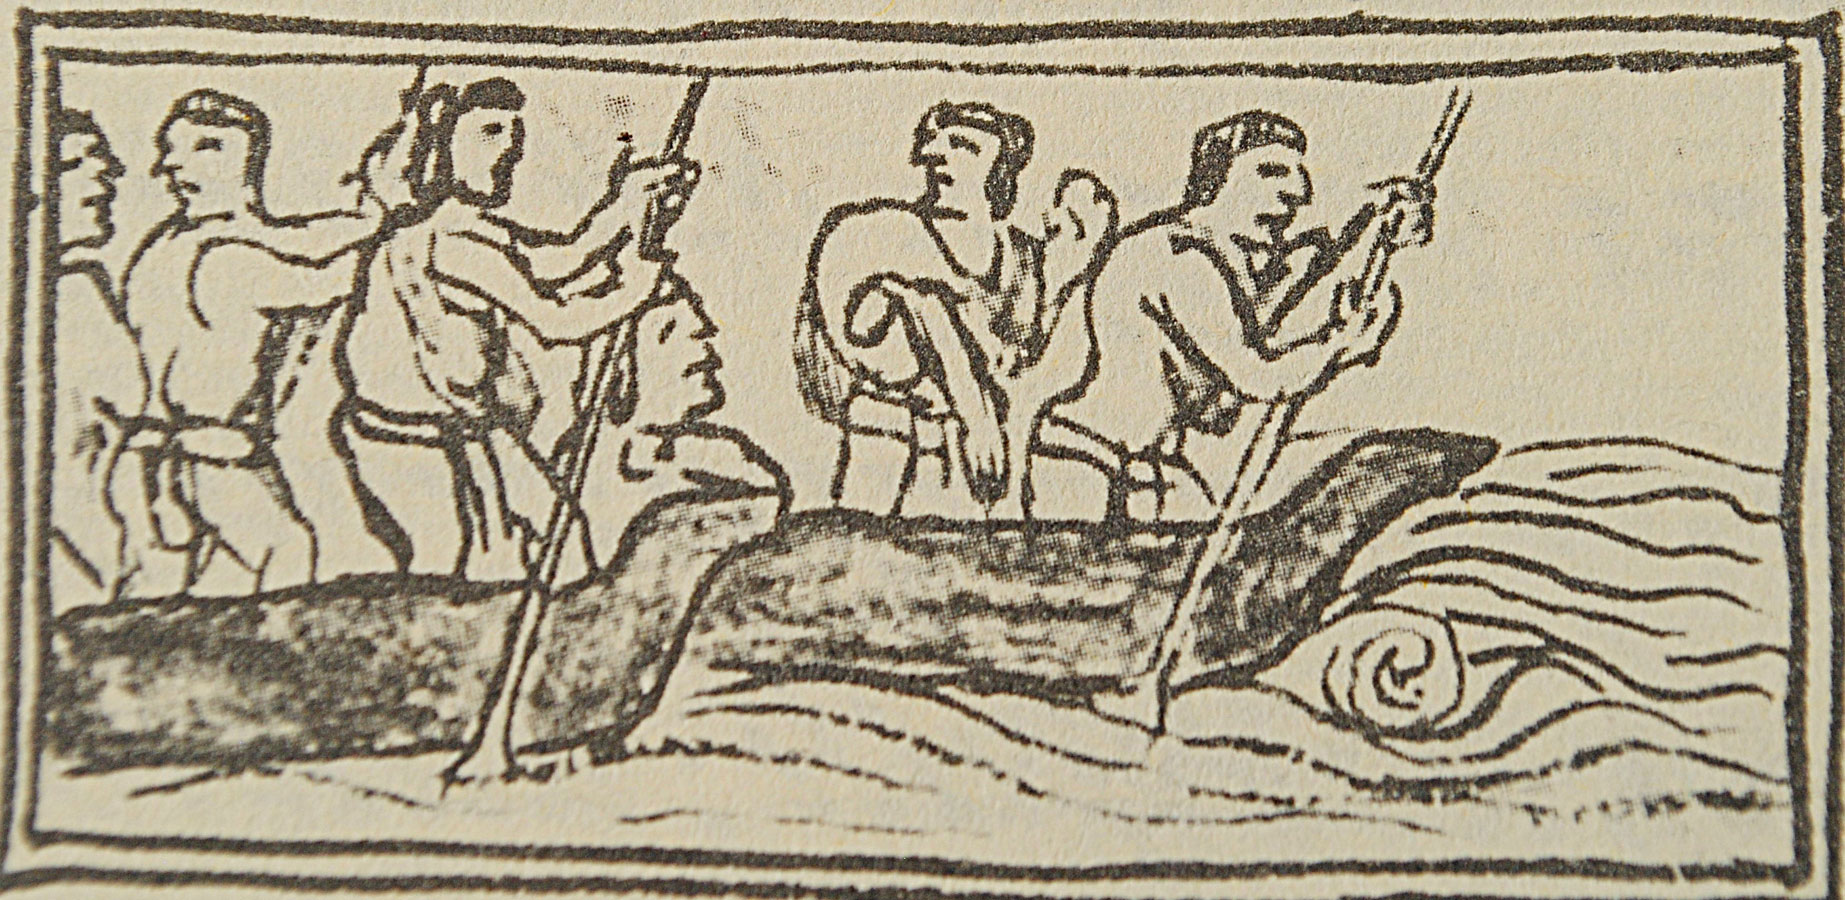 Indígenas navegan en canoas Códice Florentino, en  Bernardino de Sahagún, Historia General de las cosa de la Nueva España L XII Fo 9r.  Siglo XVI.